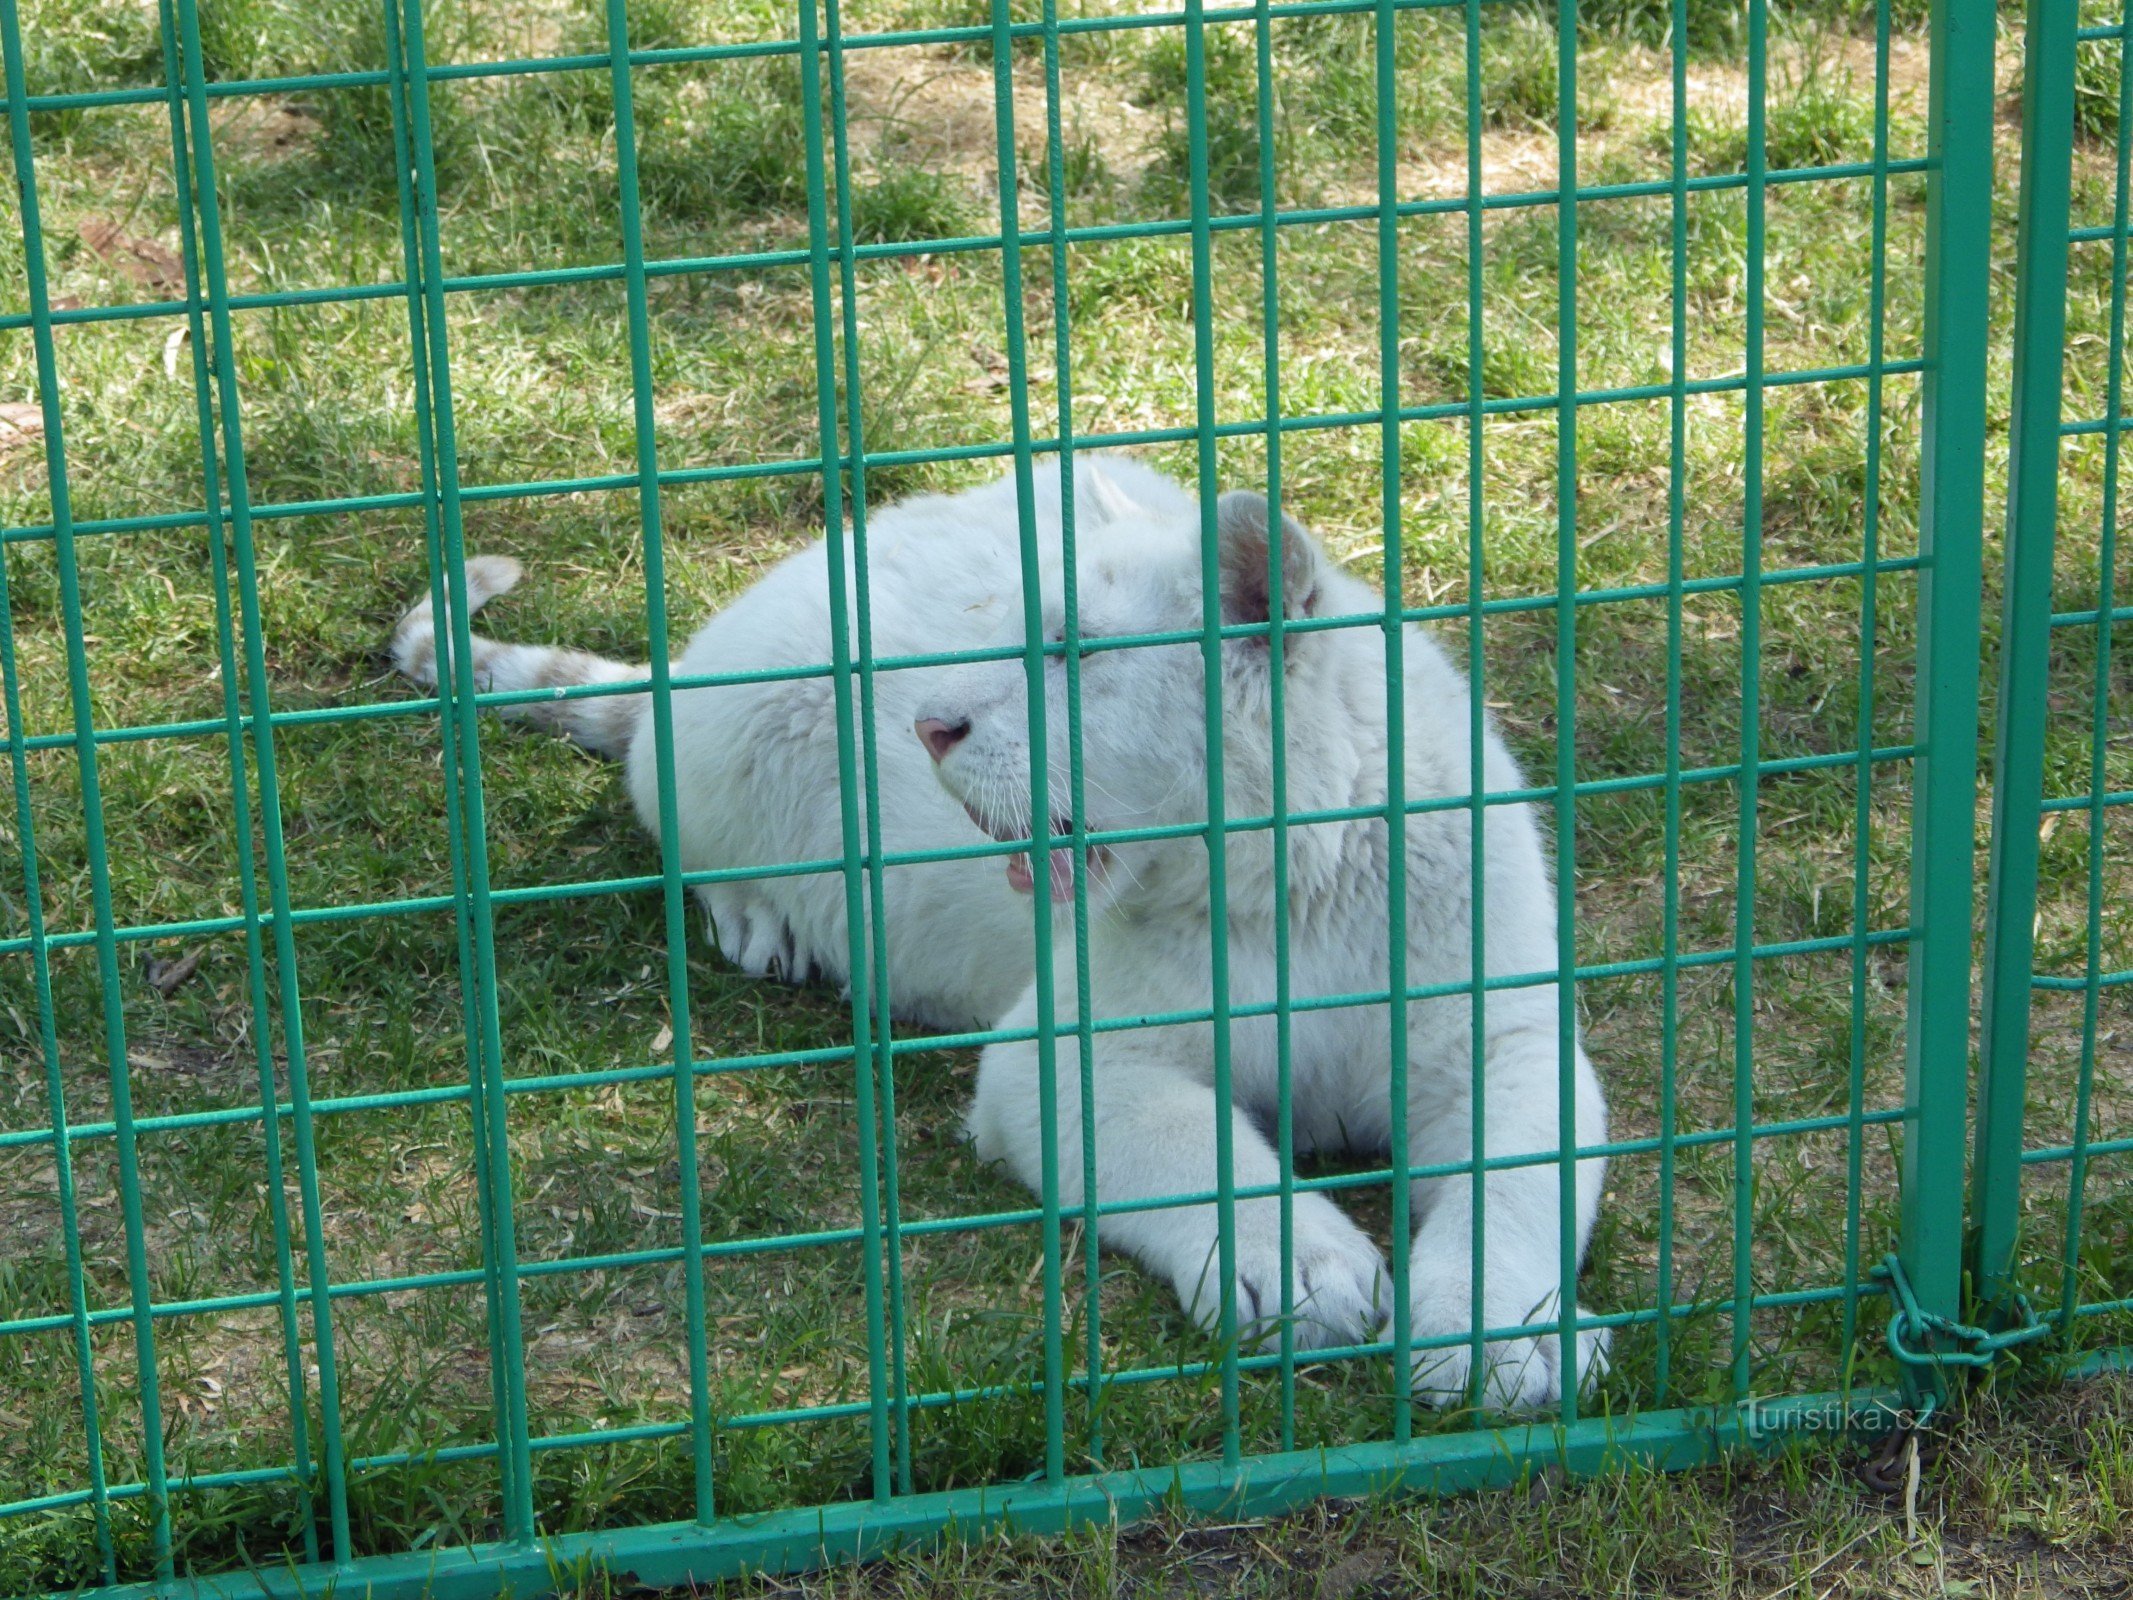 Parco zoologico Doksy - servizio fotografico con un cucciolo di leone